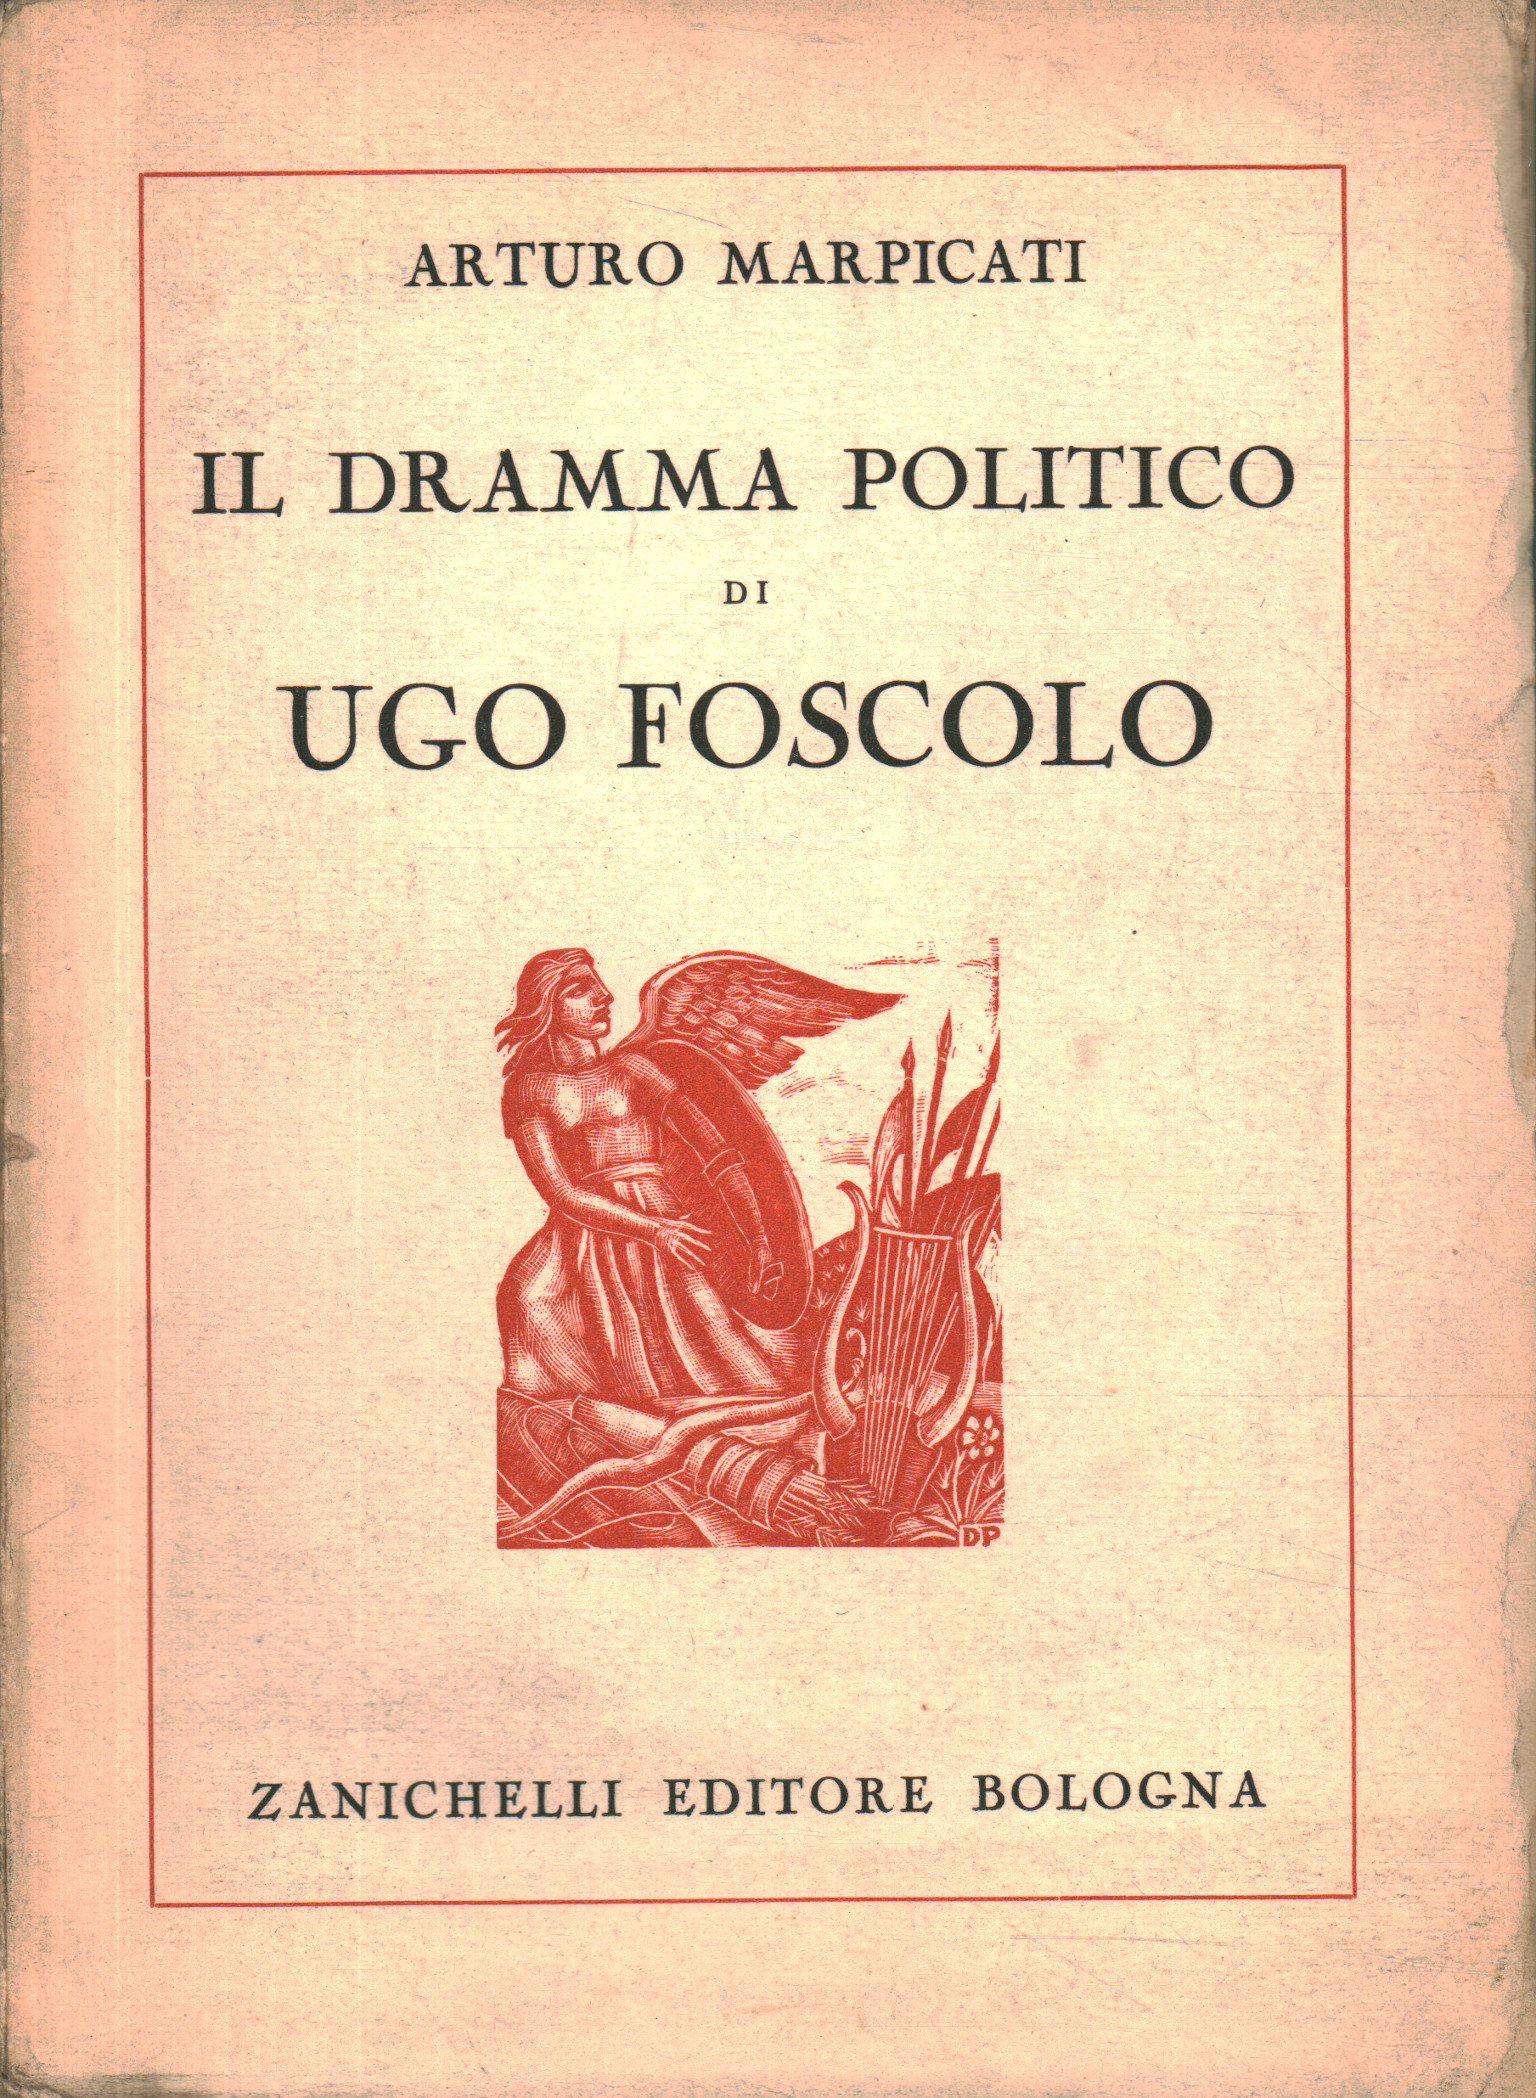 Das politische Drama von Ugo Foscolo